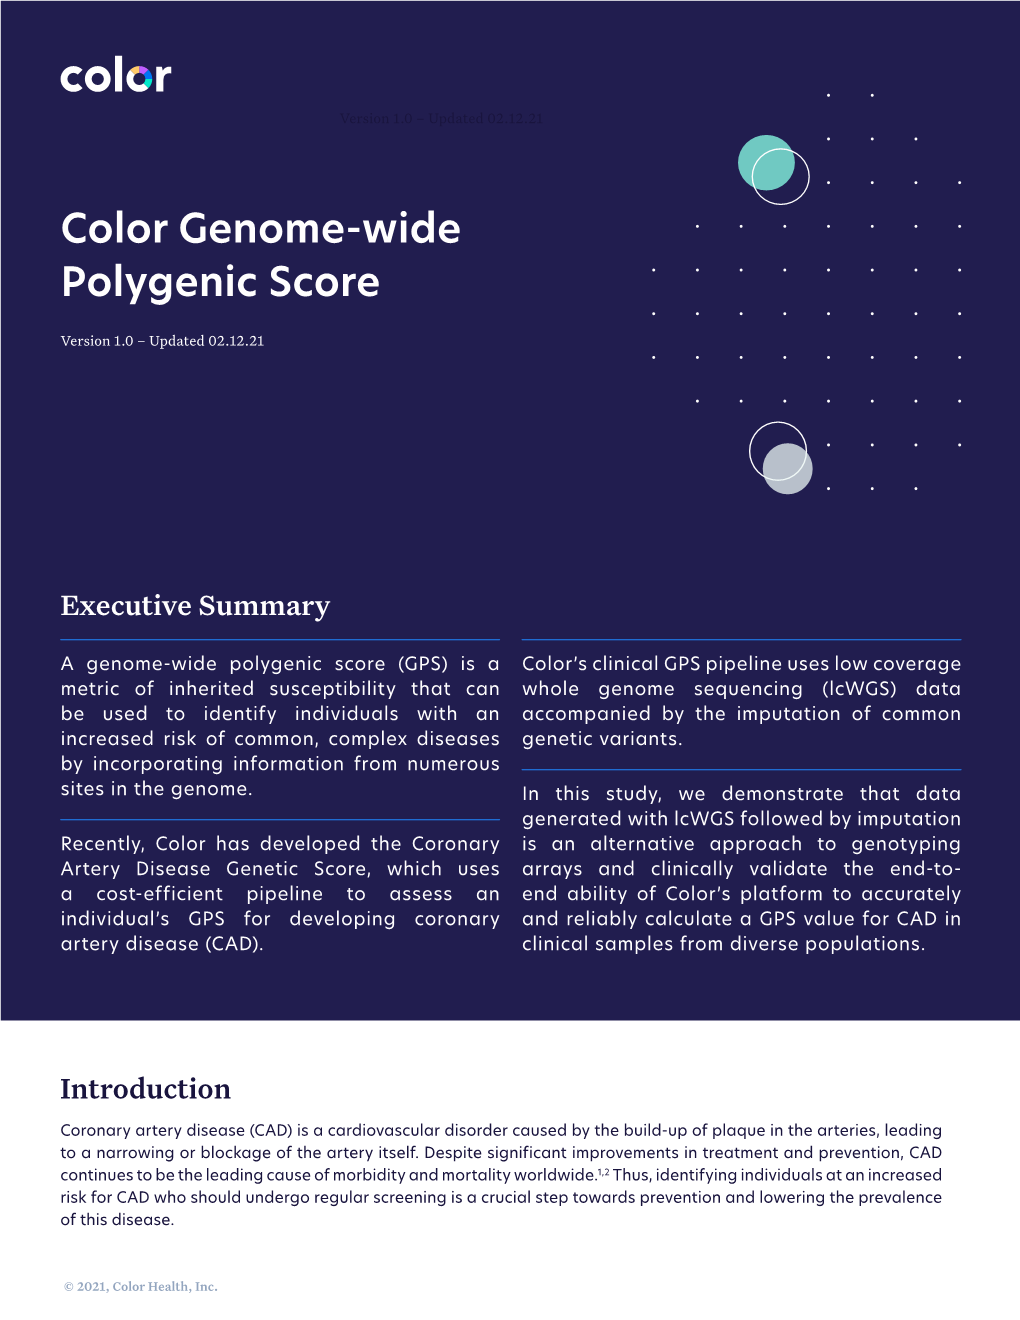 Color Genome-Wide Polygenic Score